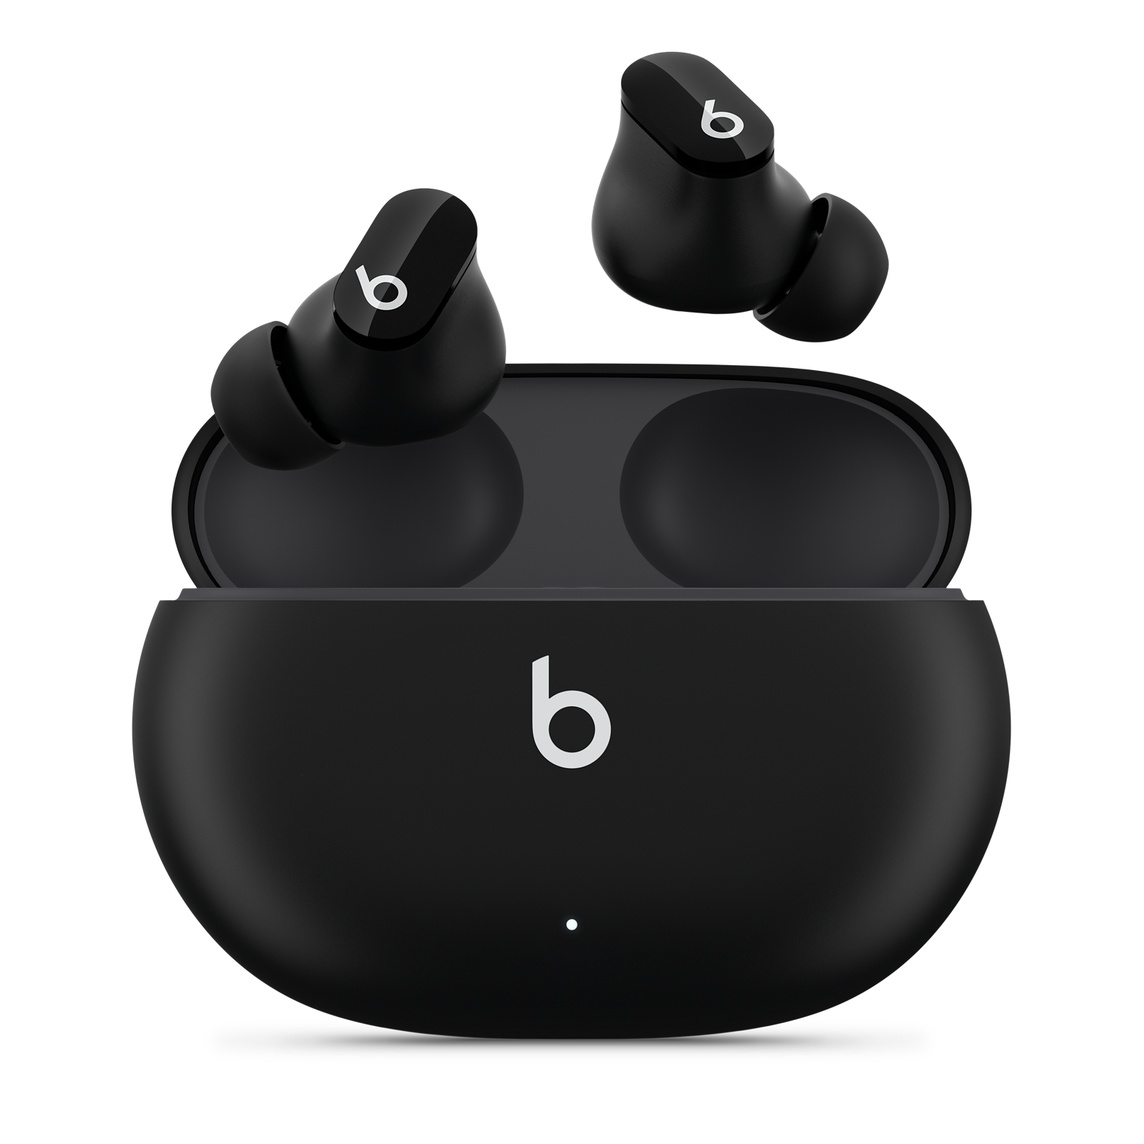 Beats Studio Buds verkligt trådlösa brusreducerande öronsnäckor i svart med Beats-logotyp, ovanför ett praktiskt laddningsetui.